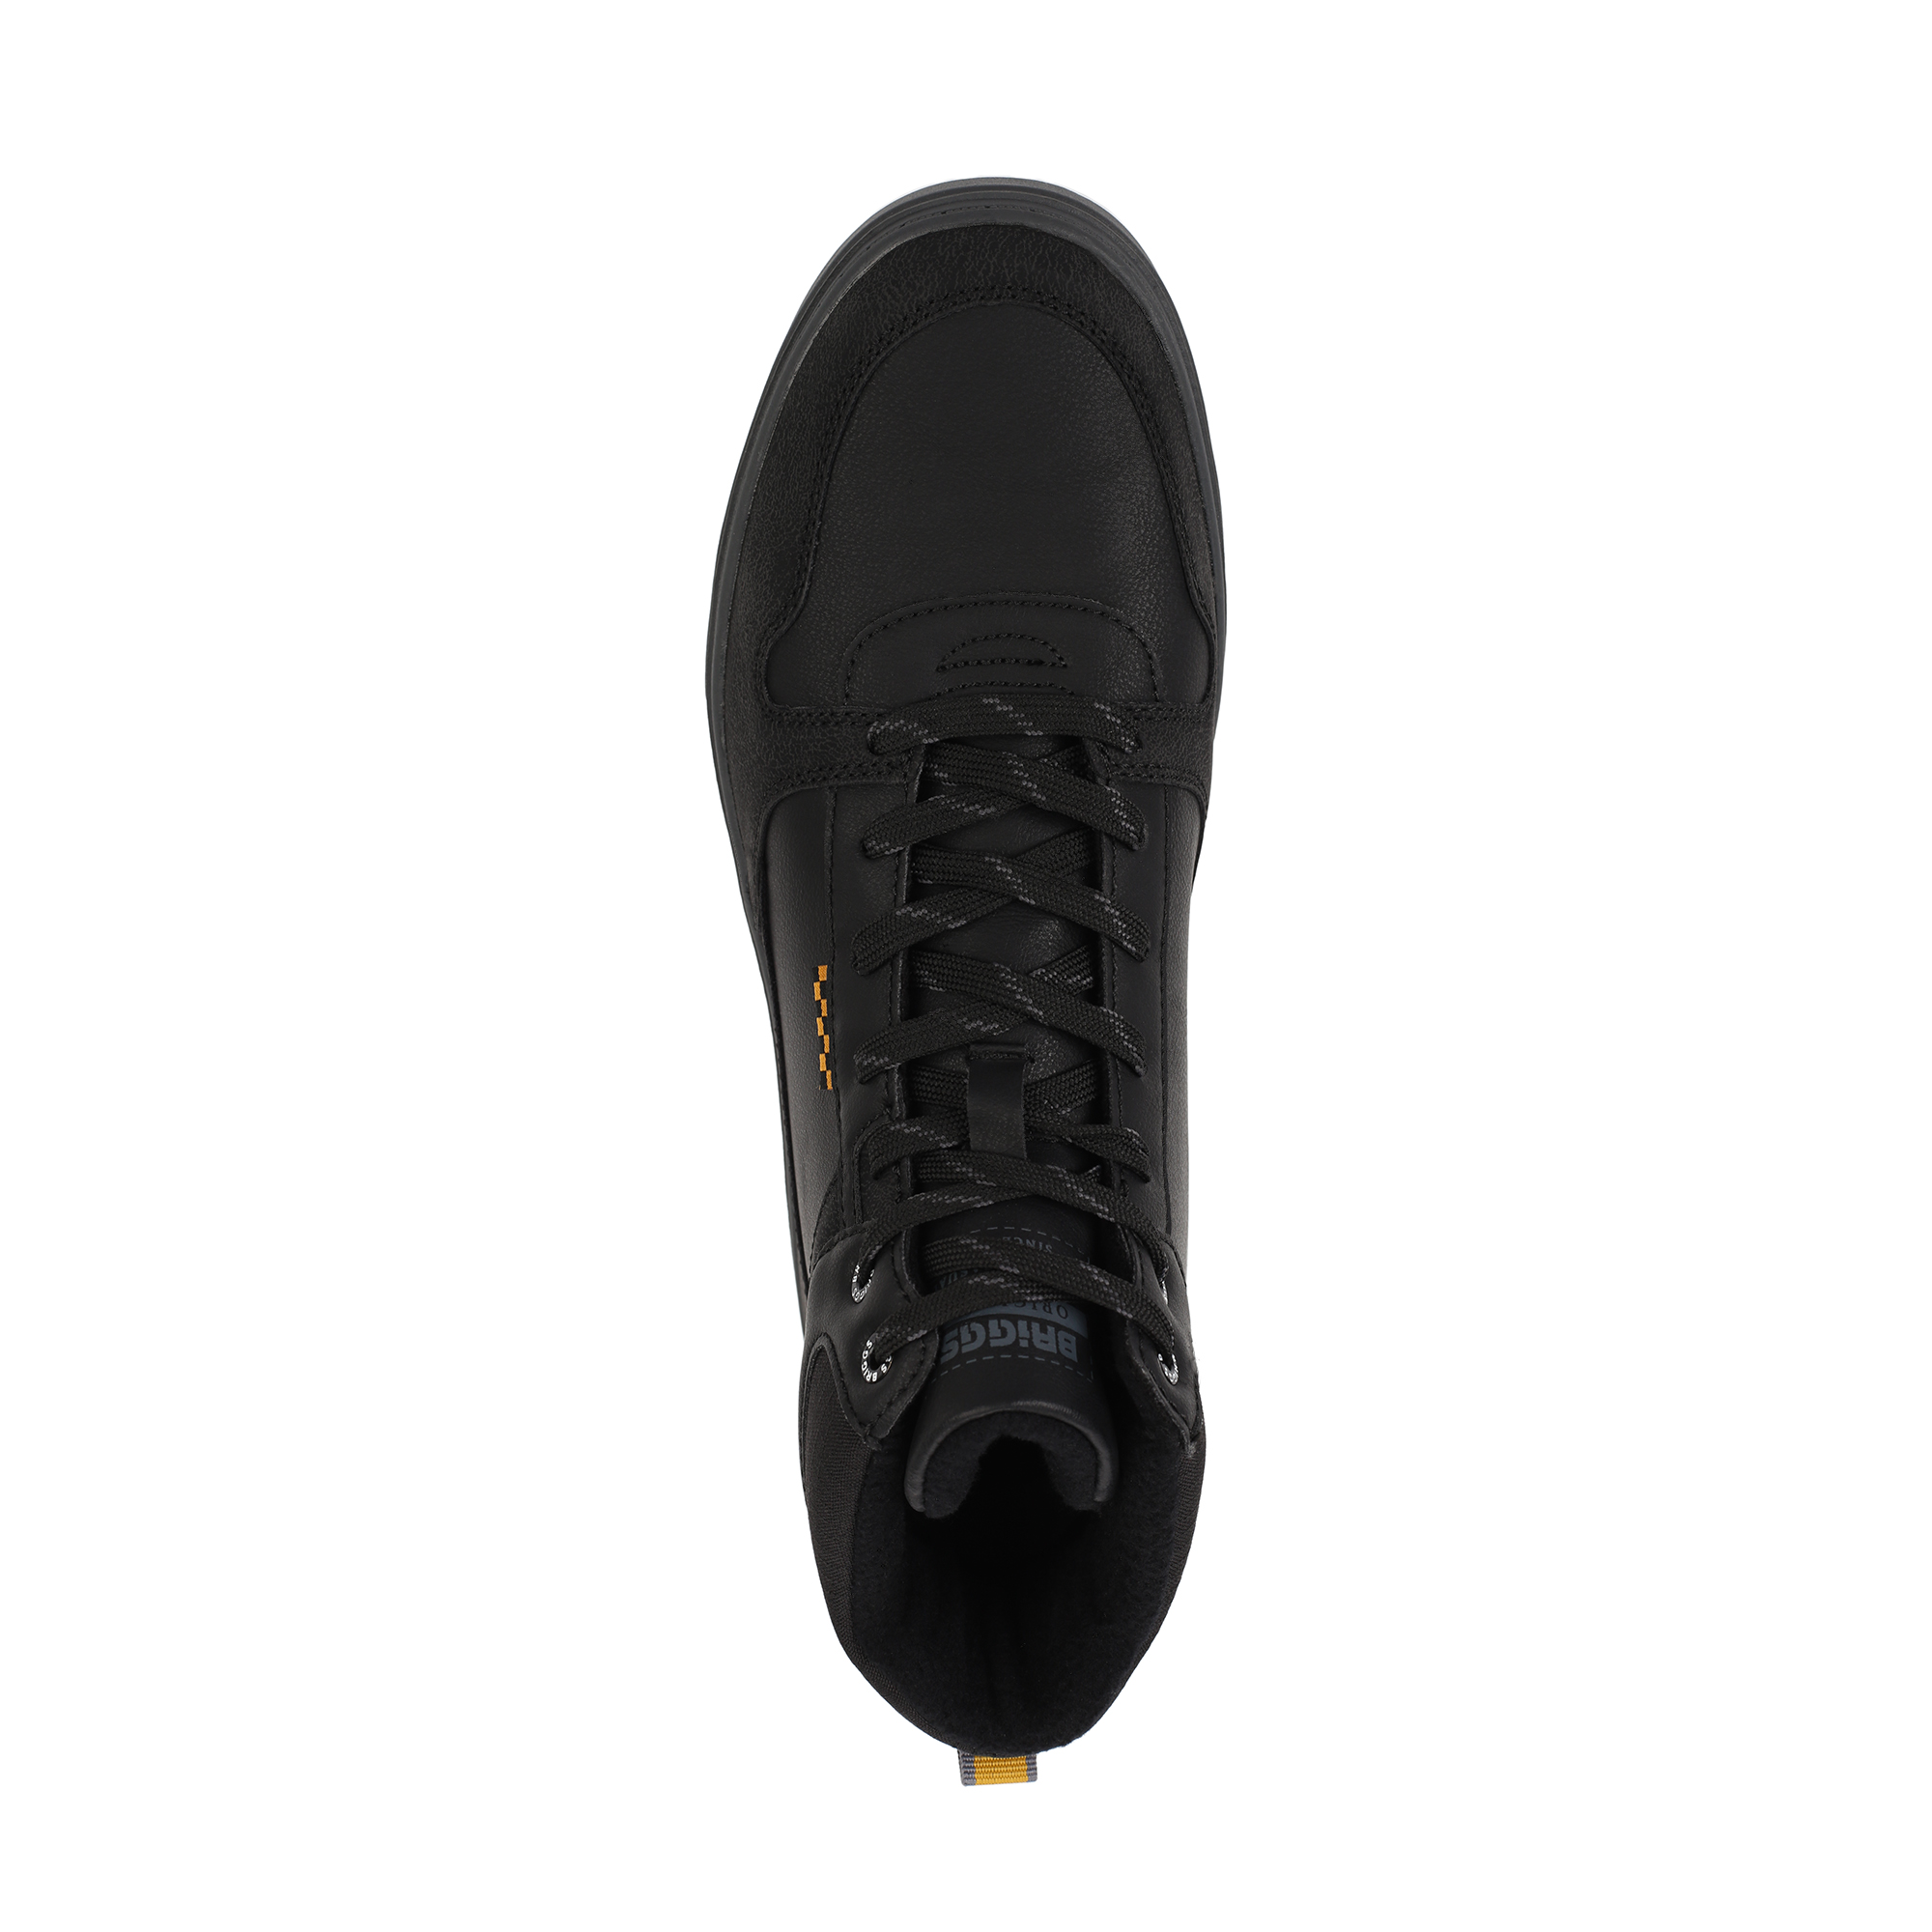 Ботинки BRIGGS 018-112C-2602, цвет черный, размер 46 - фото 5